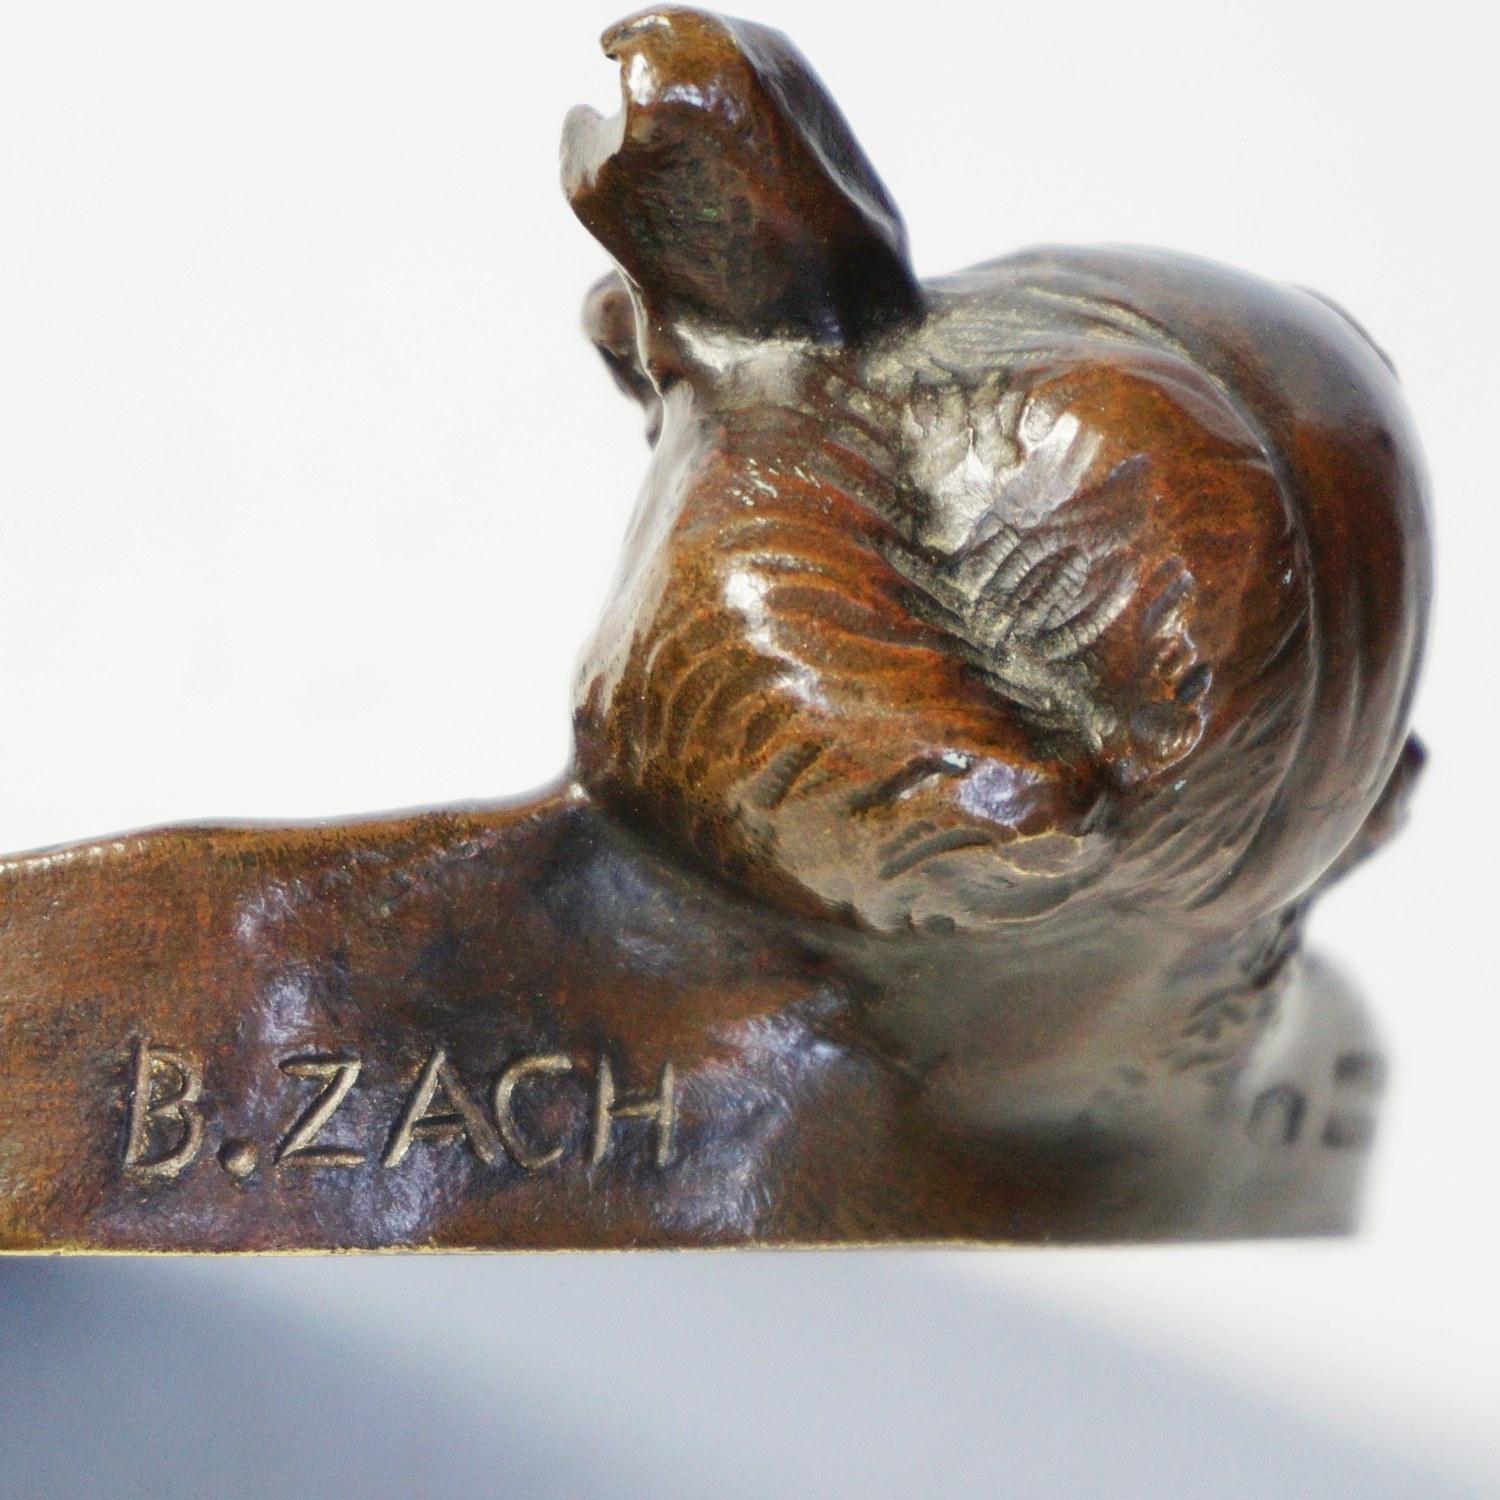 Eine Art-Deco-Bronze-Nadelschale mit einem nach außen schauenden Frauenkopf. Signiert 'B. Zach' und gestempelt 'Made in Austria'. 

Künstler: Bruno Zach (1891-1935)

Abmessungen: B 14 cm, H 4,5 cm

Herkunft: Österreich 

Datum: ca.